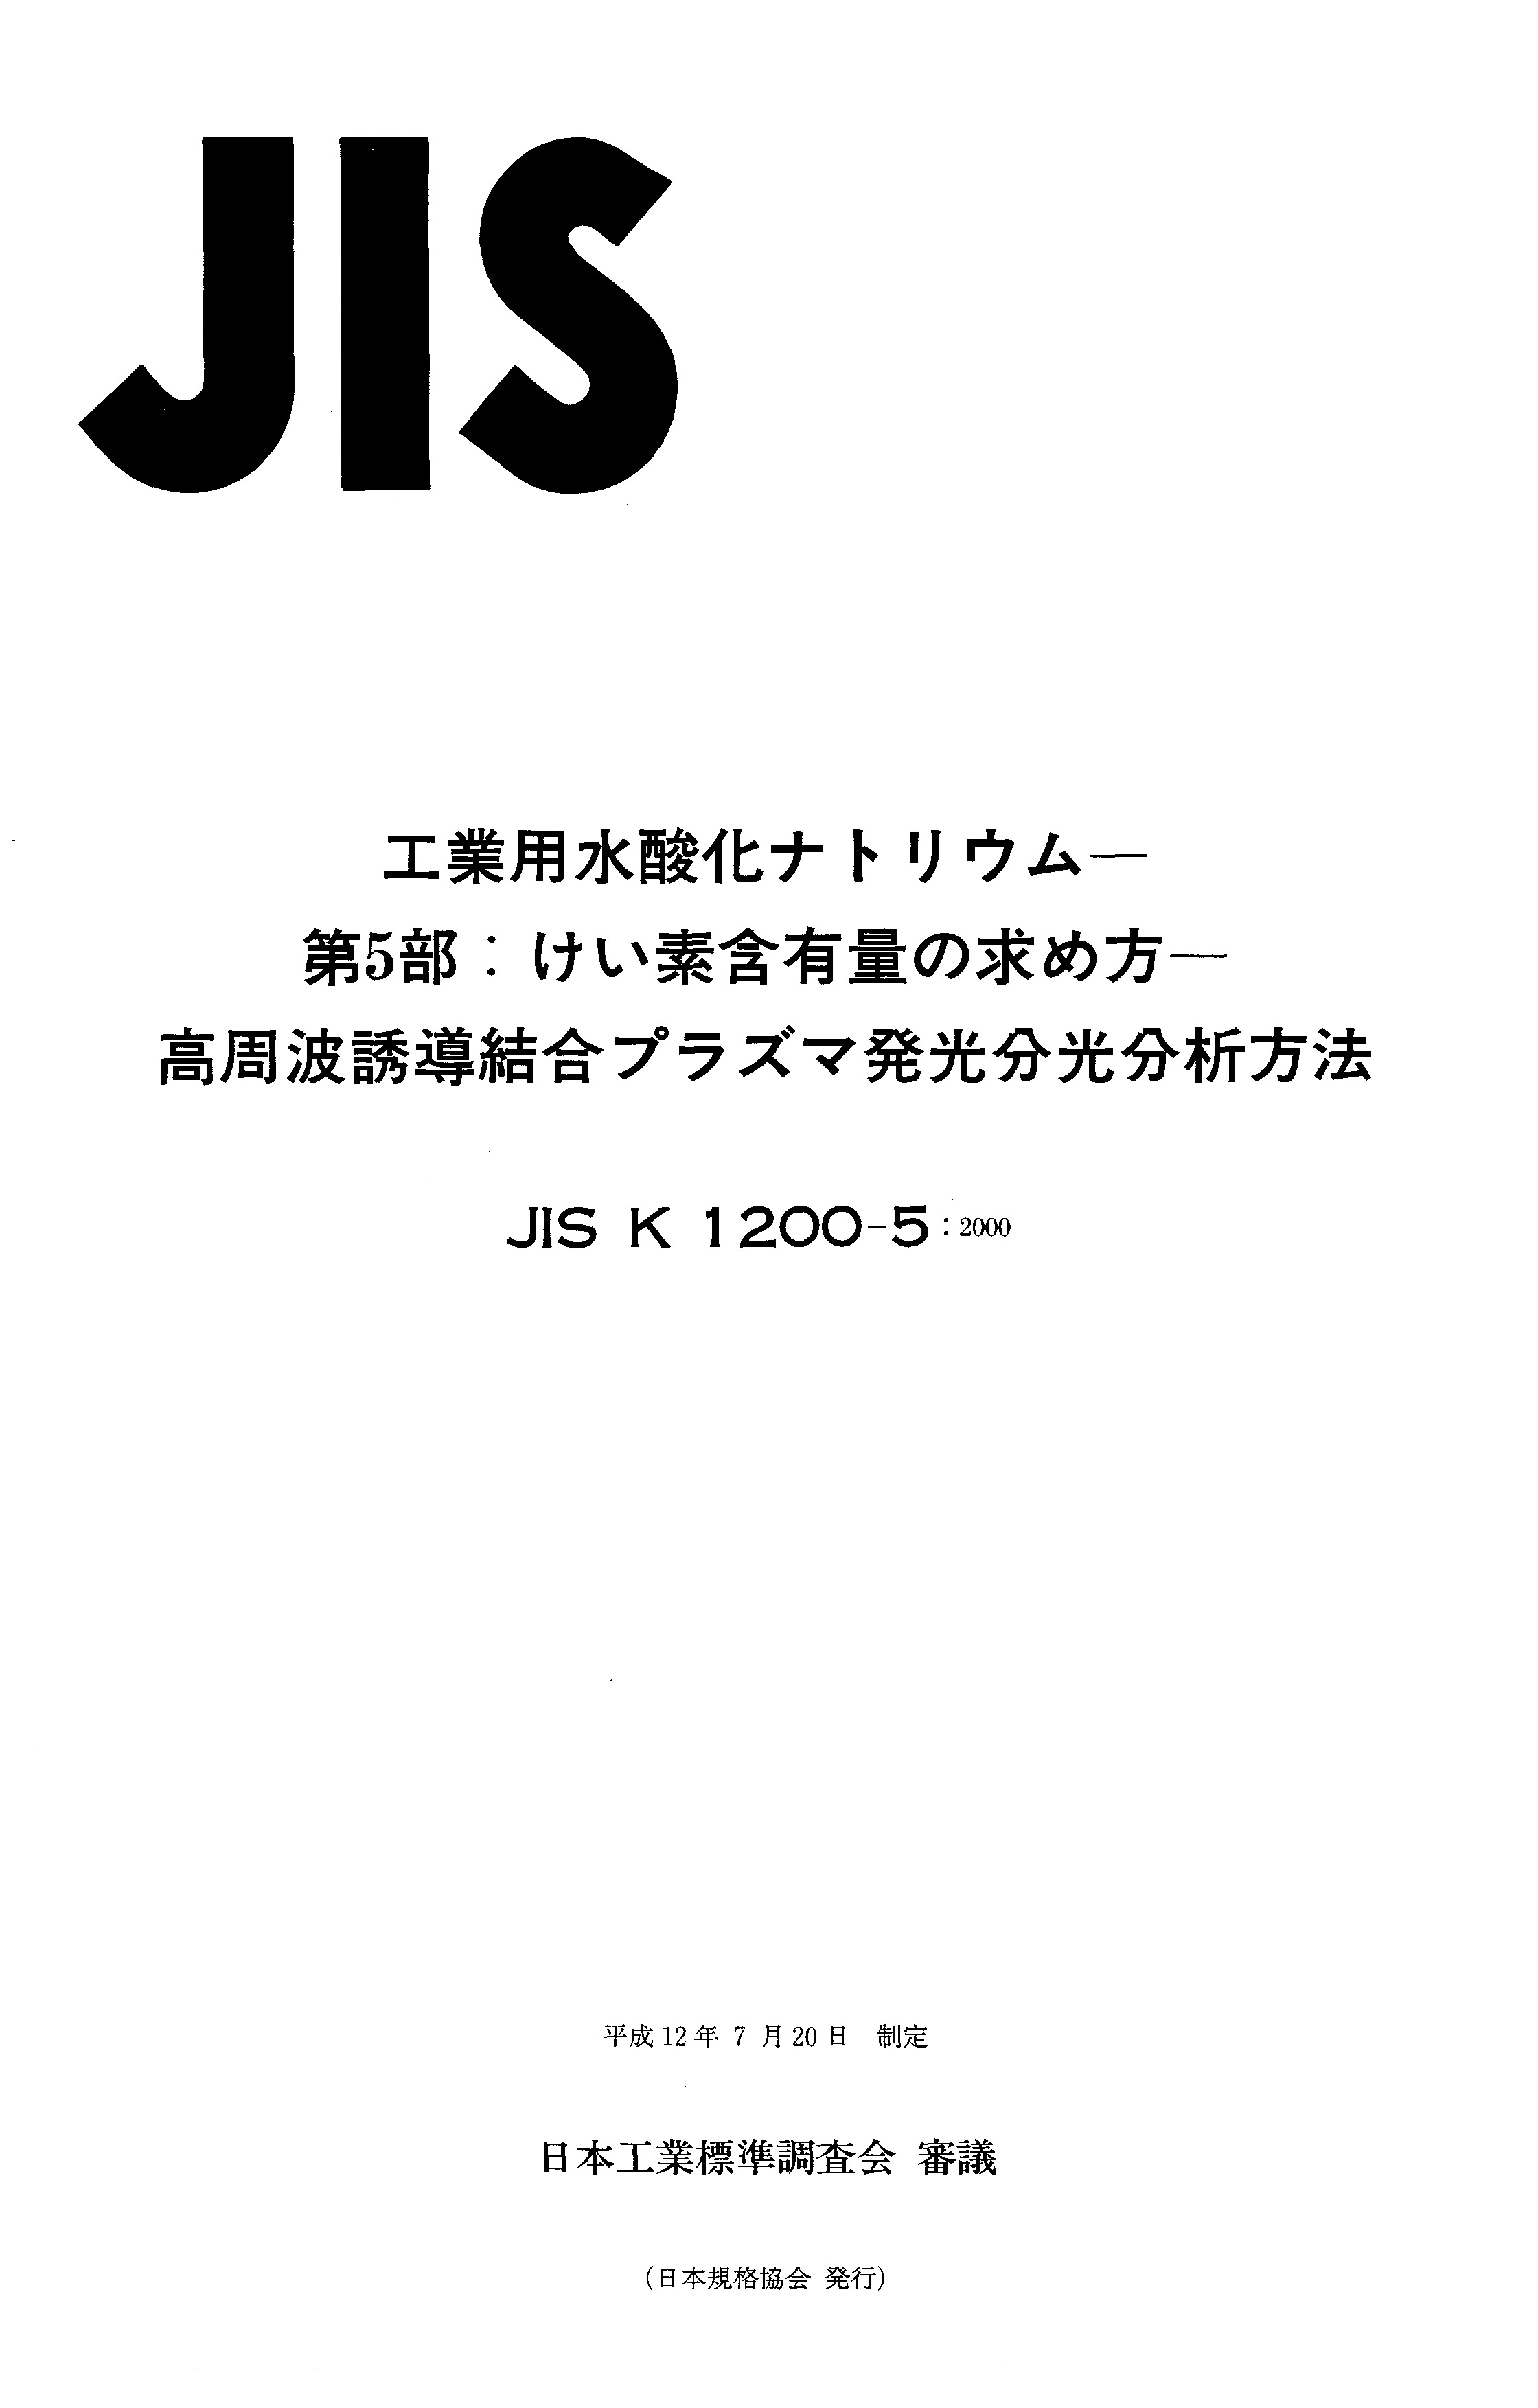 JIS K 1200-5:2000